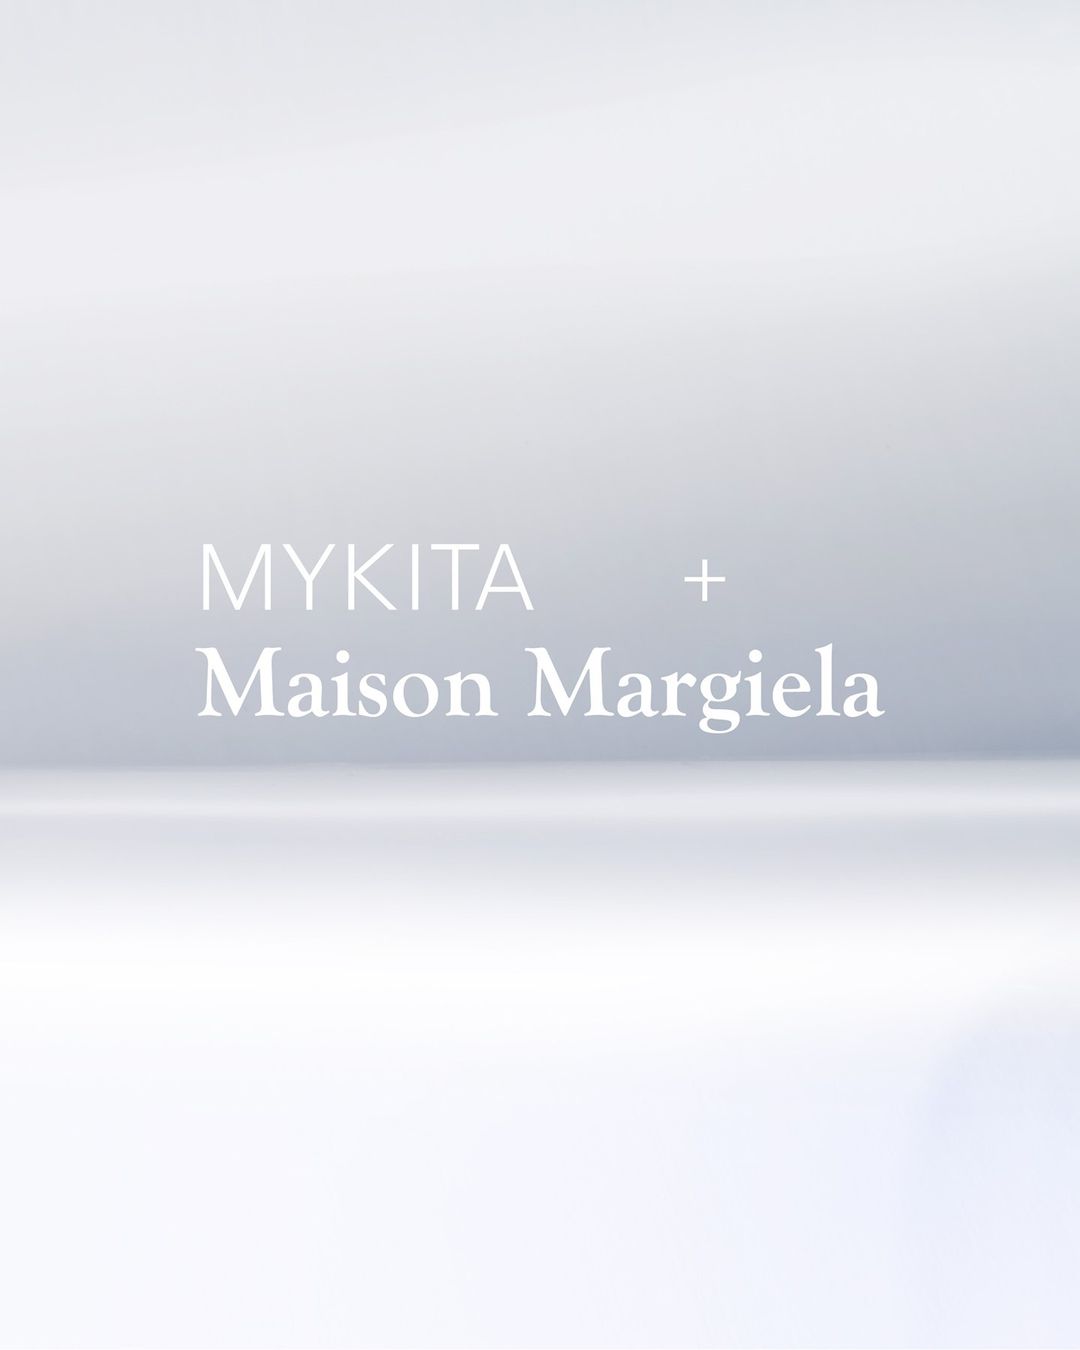 MYKITA + Maison Margiela